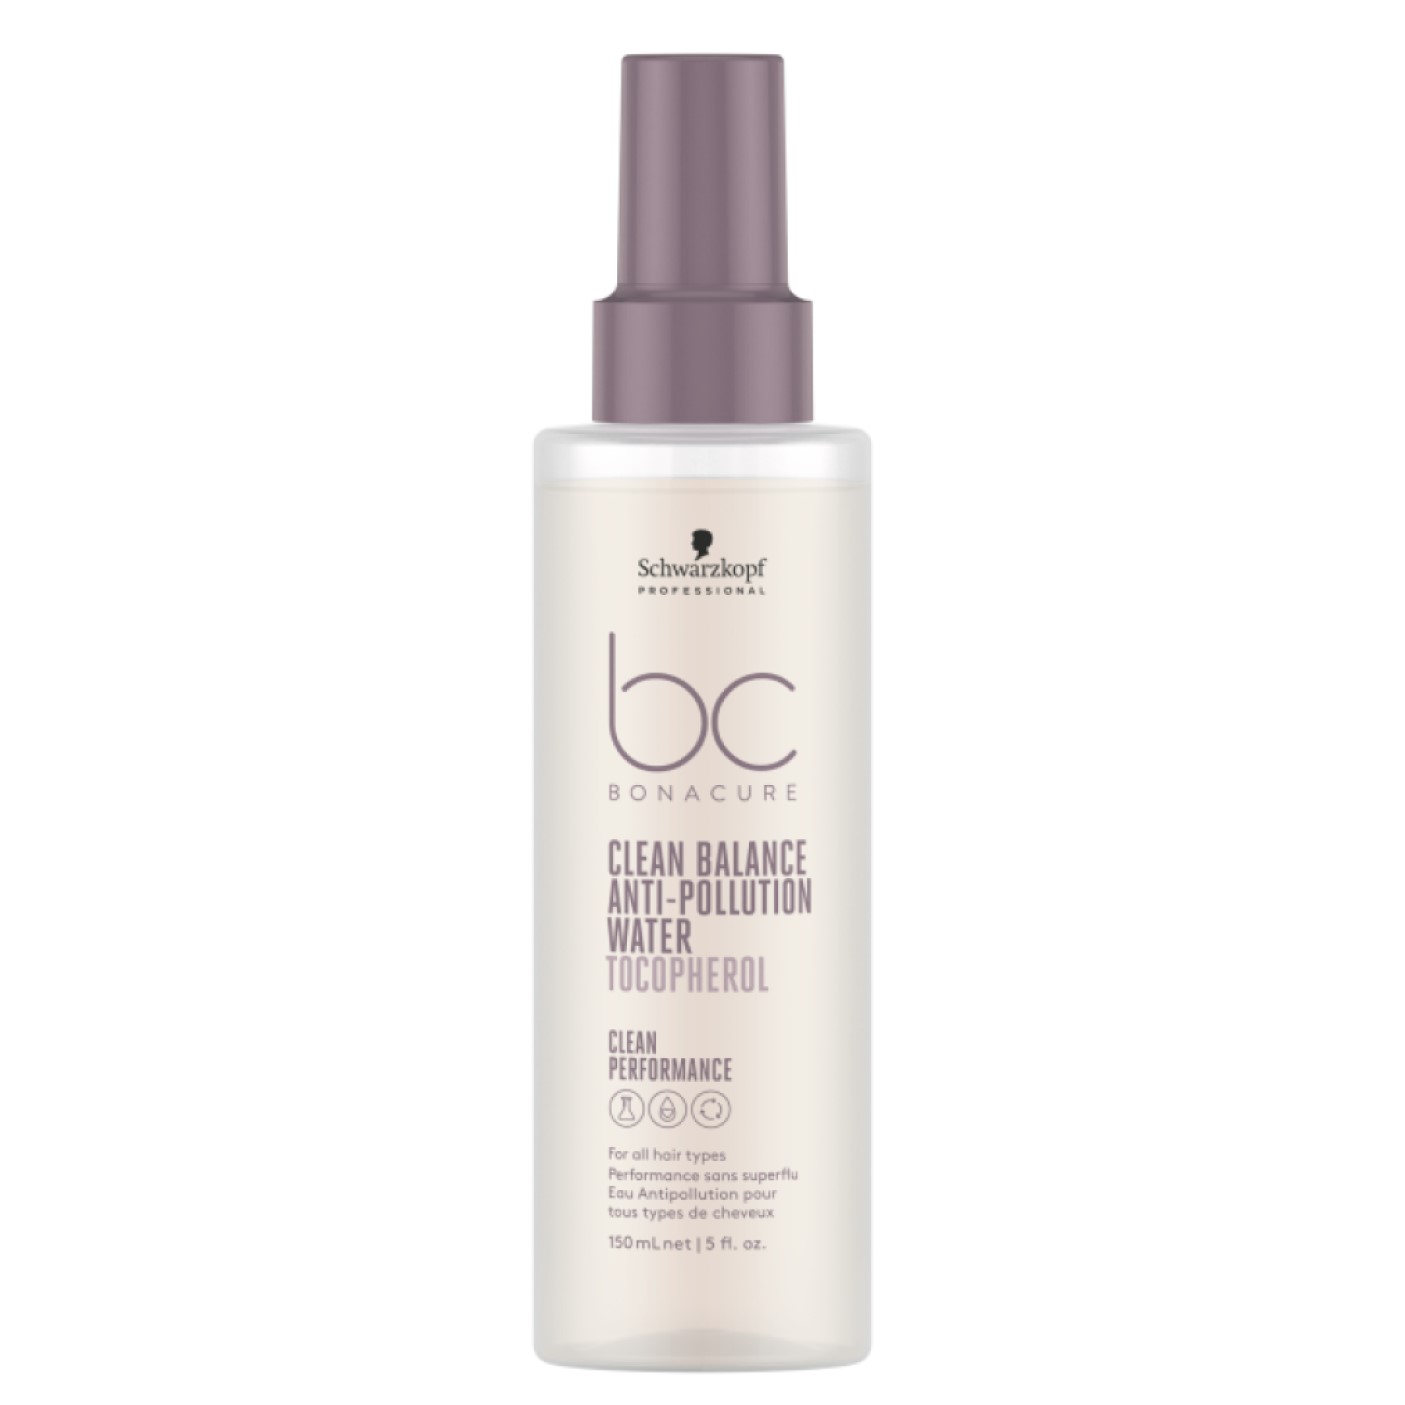 Спрей для защиты волос от загрязнения Schwarzkopf Professional BC Bonacure Сlean Balance 150 мл - фото 1